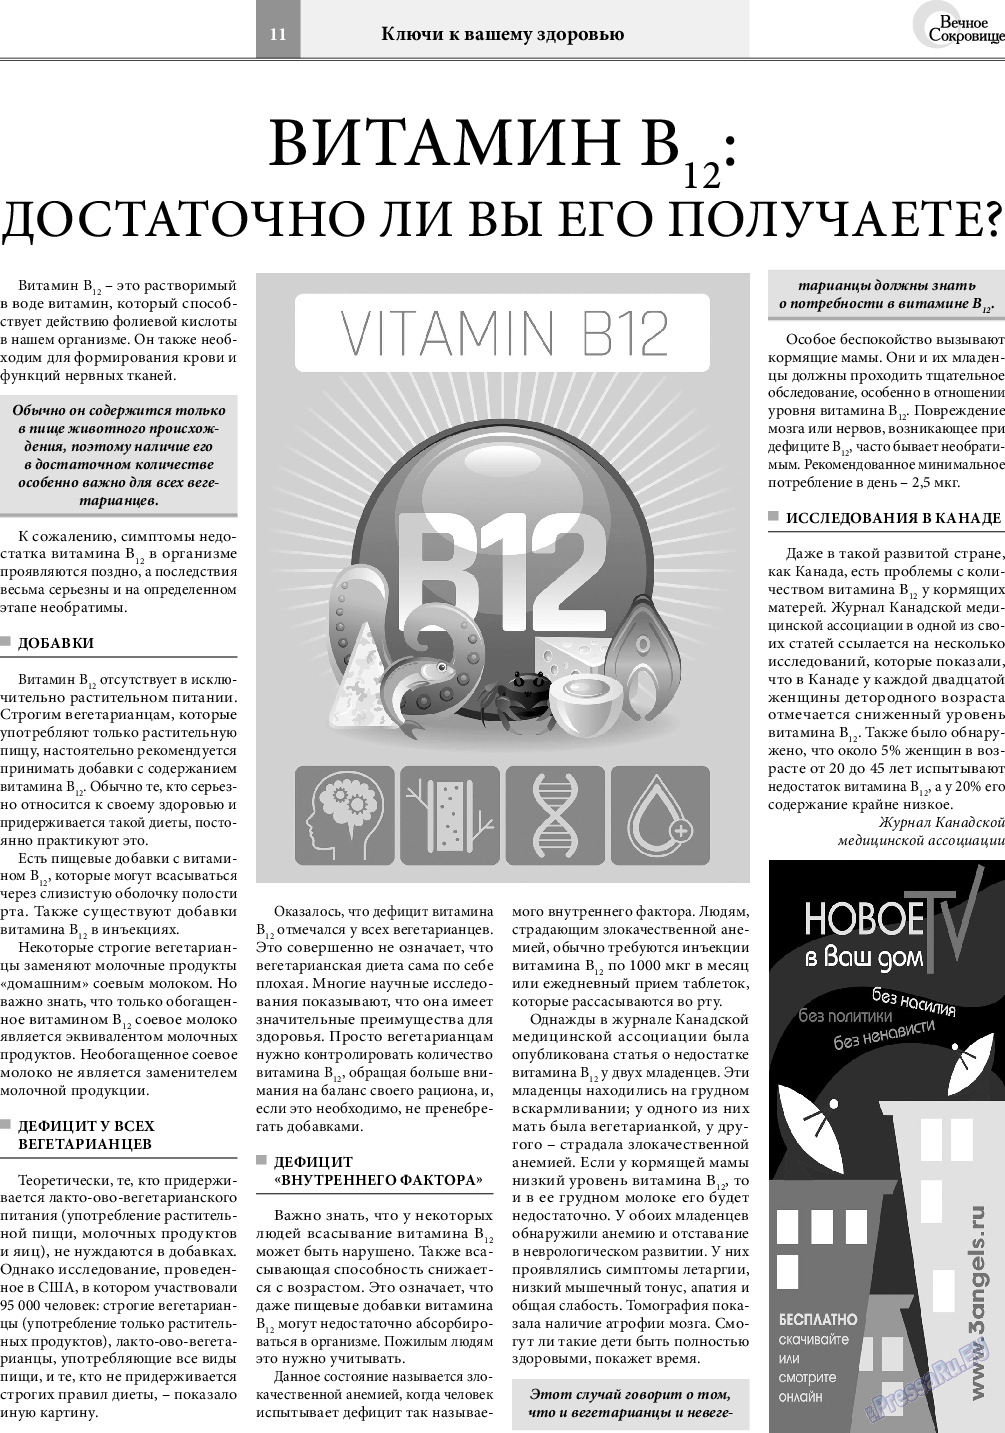 Вечное сокровище (газета). 2018 год, номер 5, стр. 11